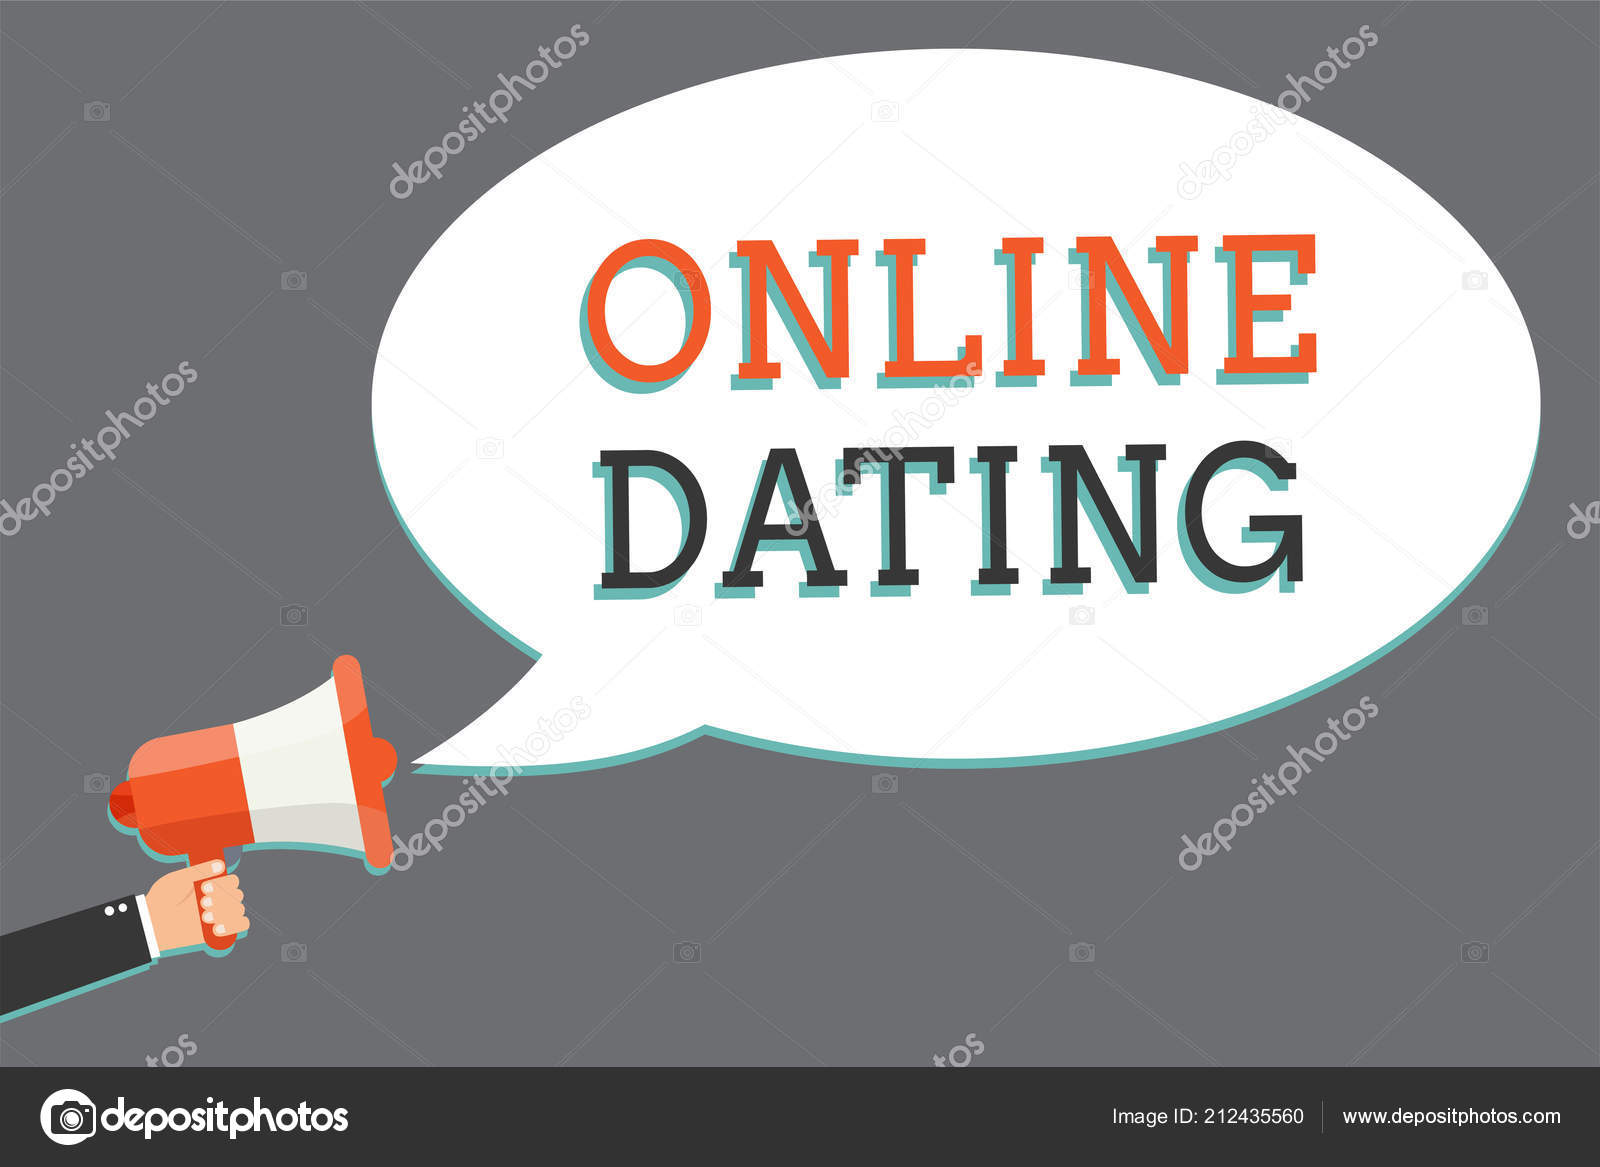 Chiedendo dating online